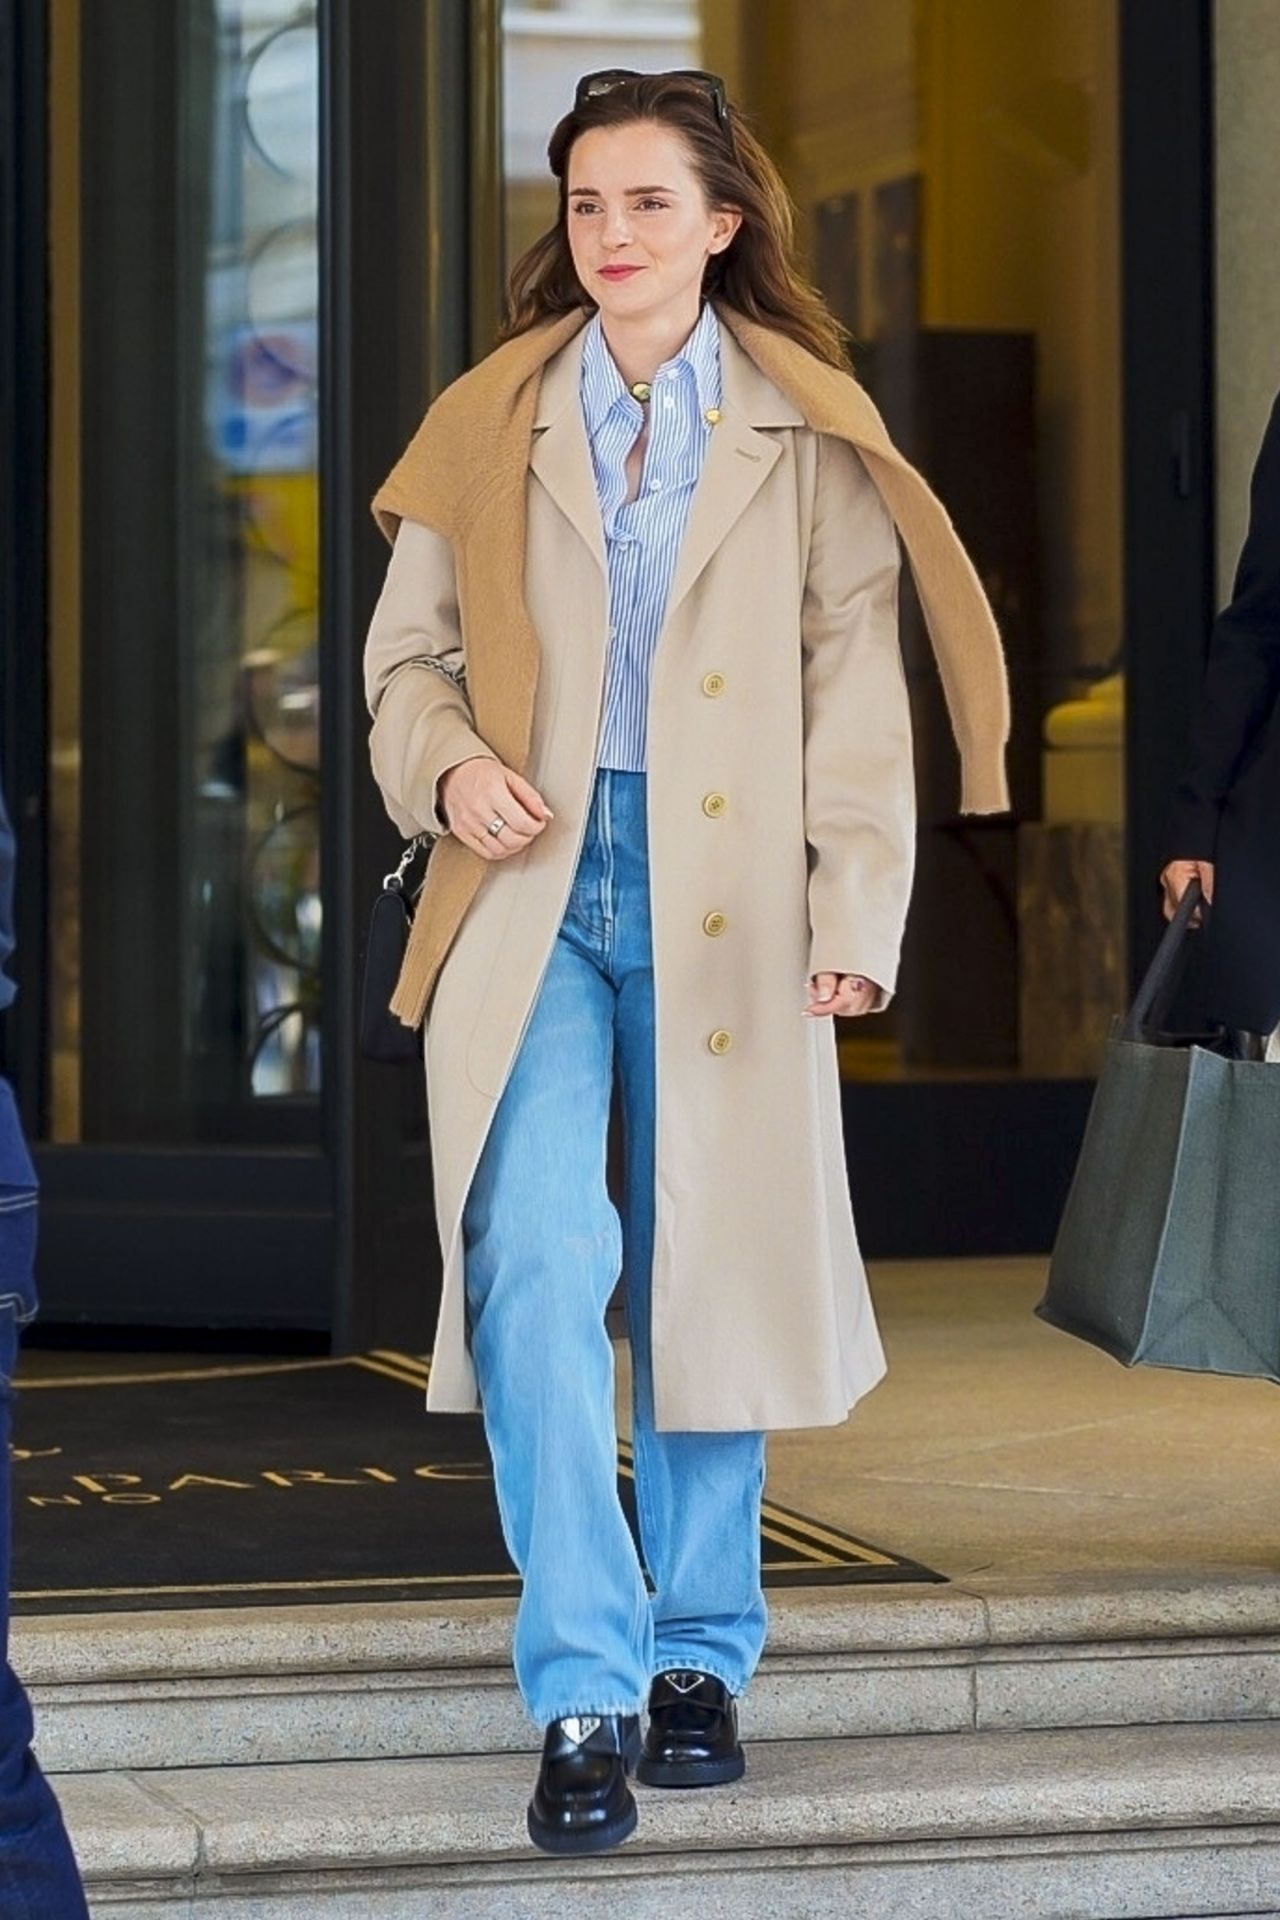 Thời trang của Emma Watson ngày càng sành điệu xuất sắc dù vẫn trung thành với phong cách tối giản - Ảnh 2.